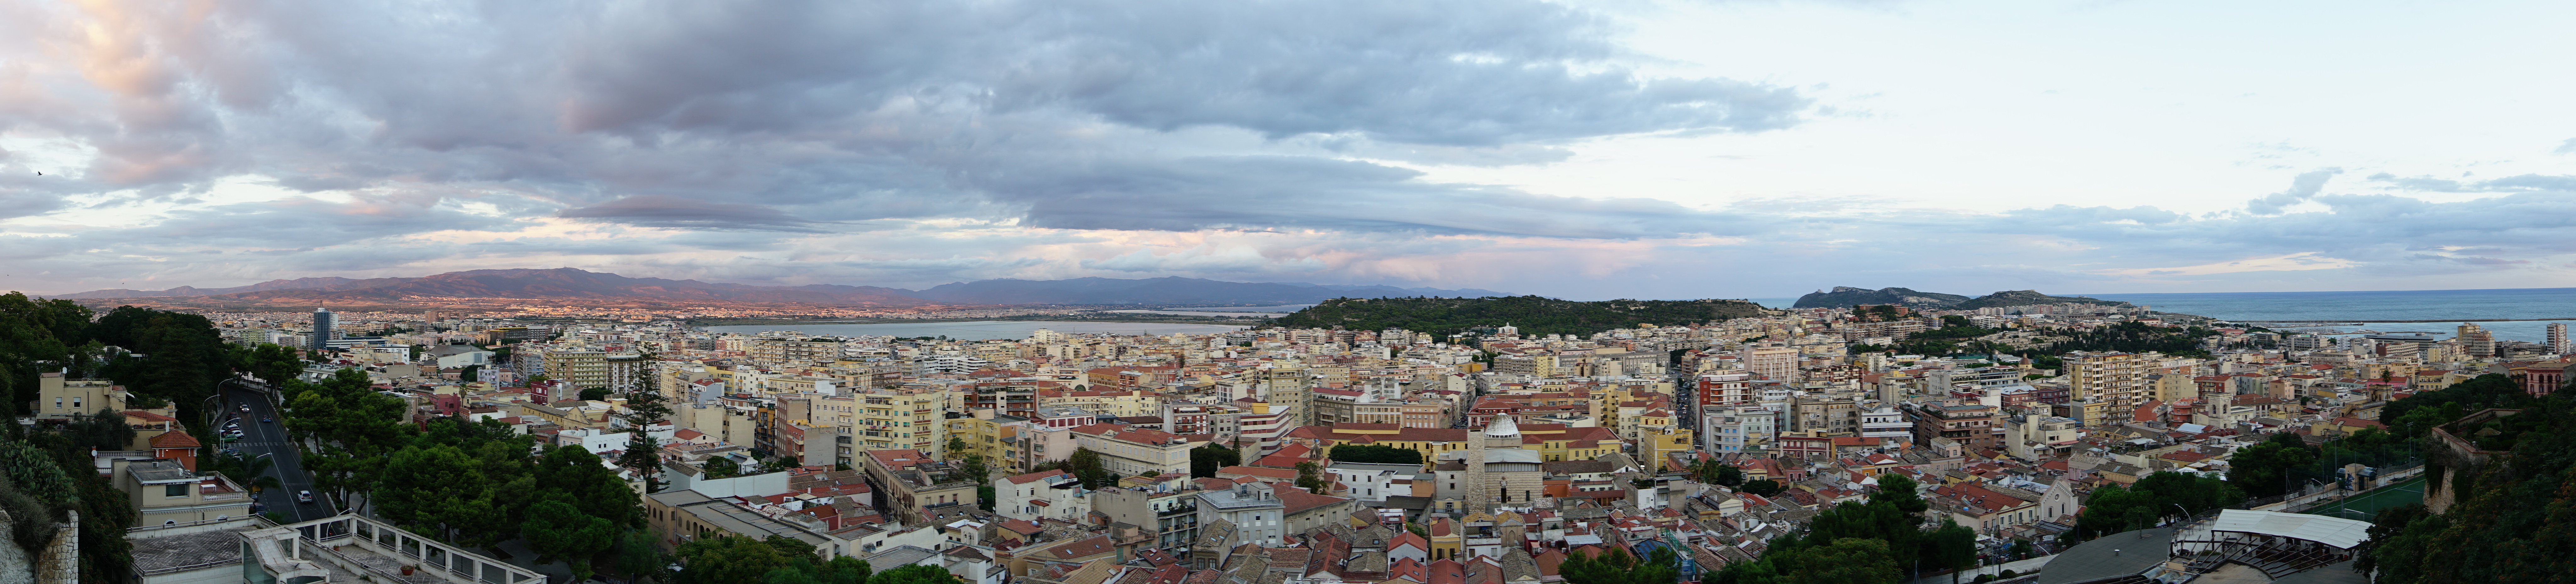 Panorama von Cagliari vom Castello aus